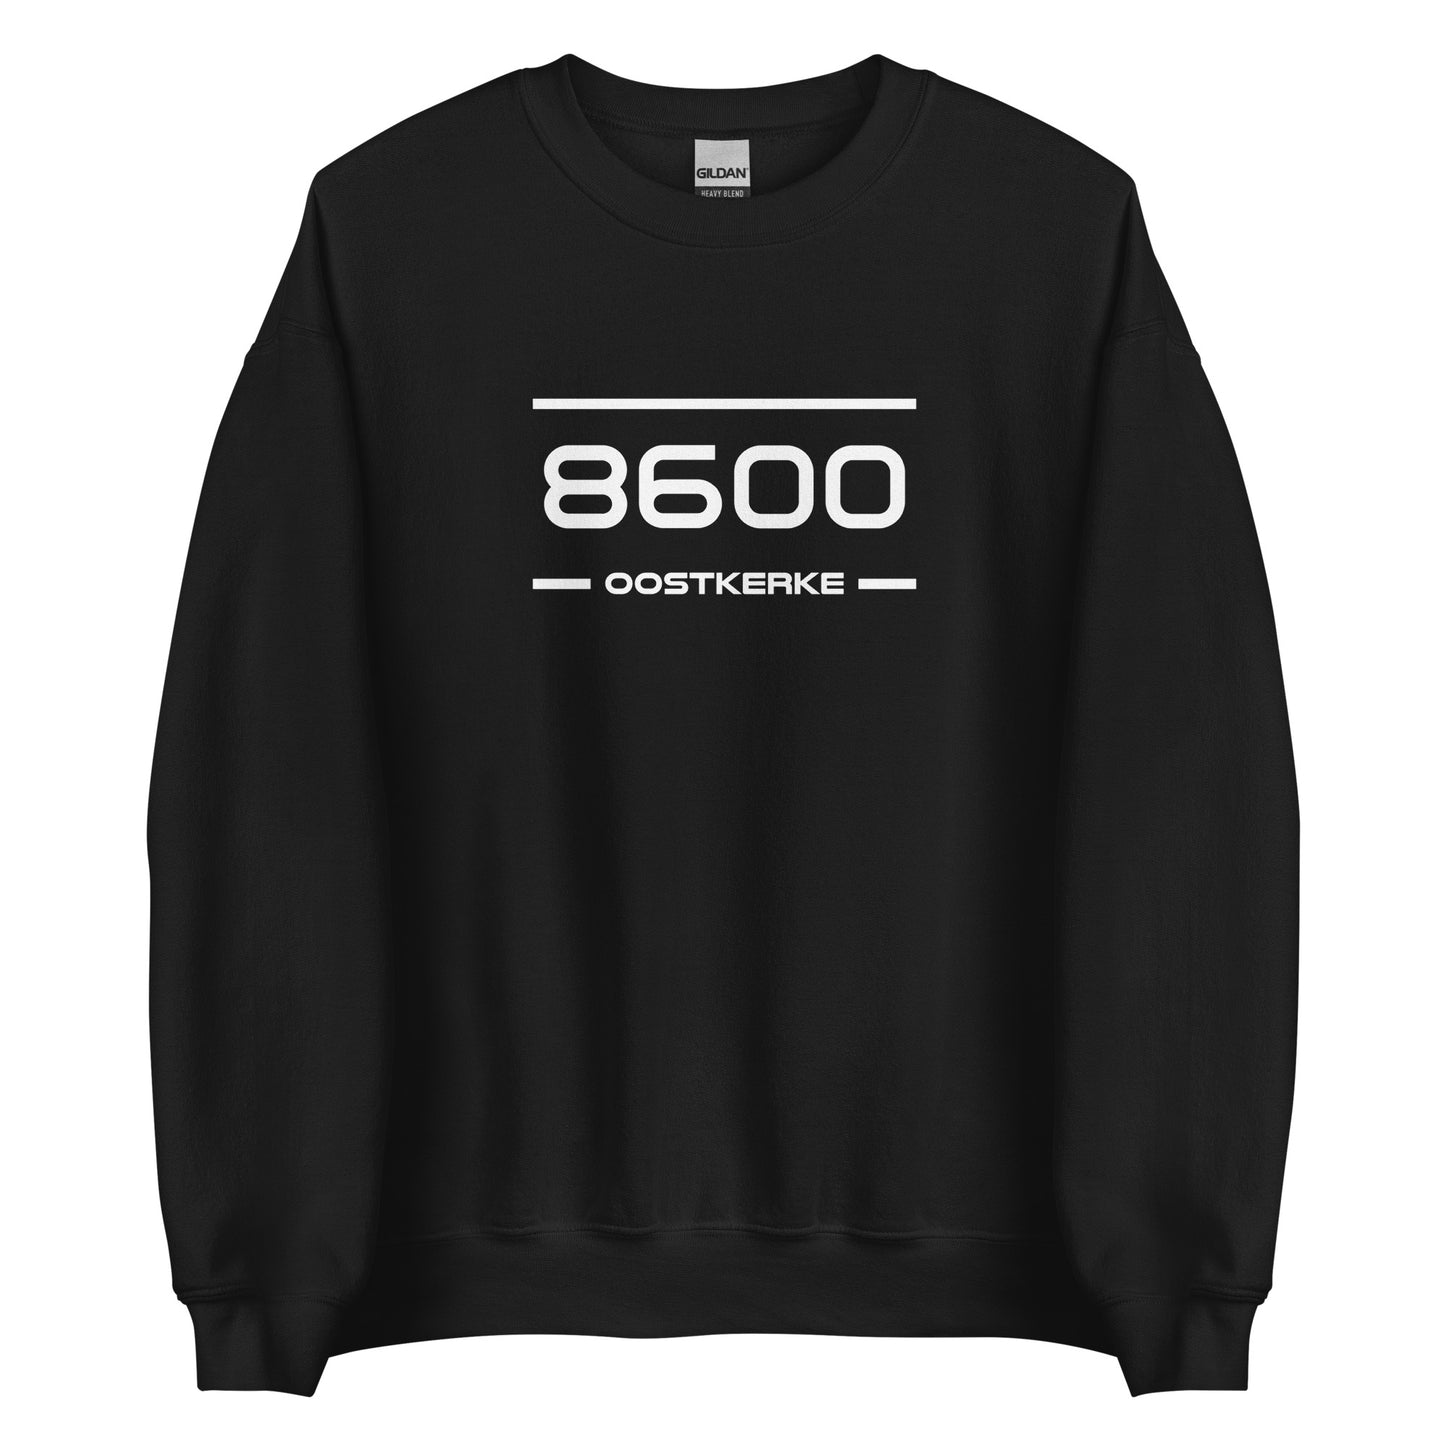 Sweater - 8600 - Oostkerke (M/V)